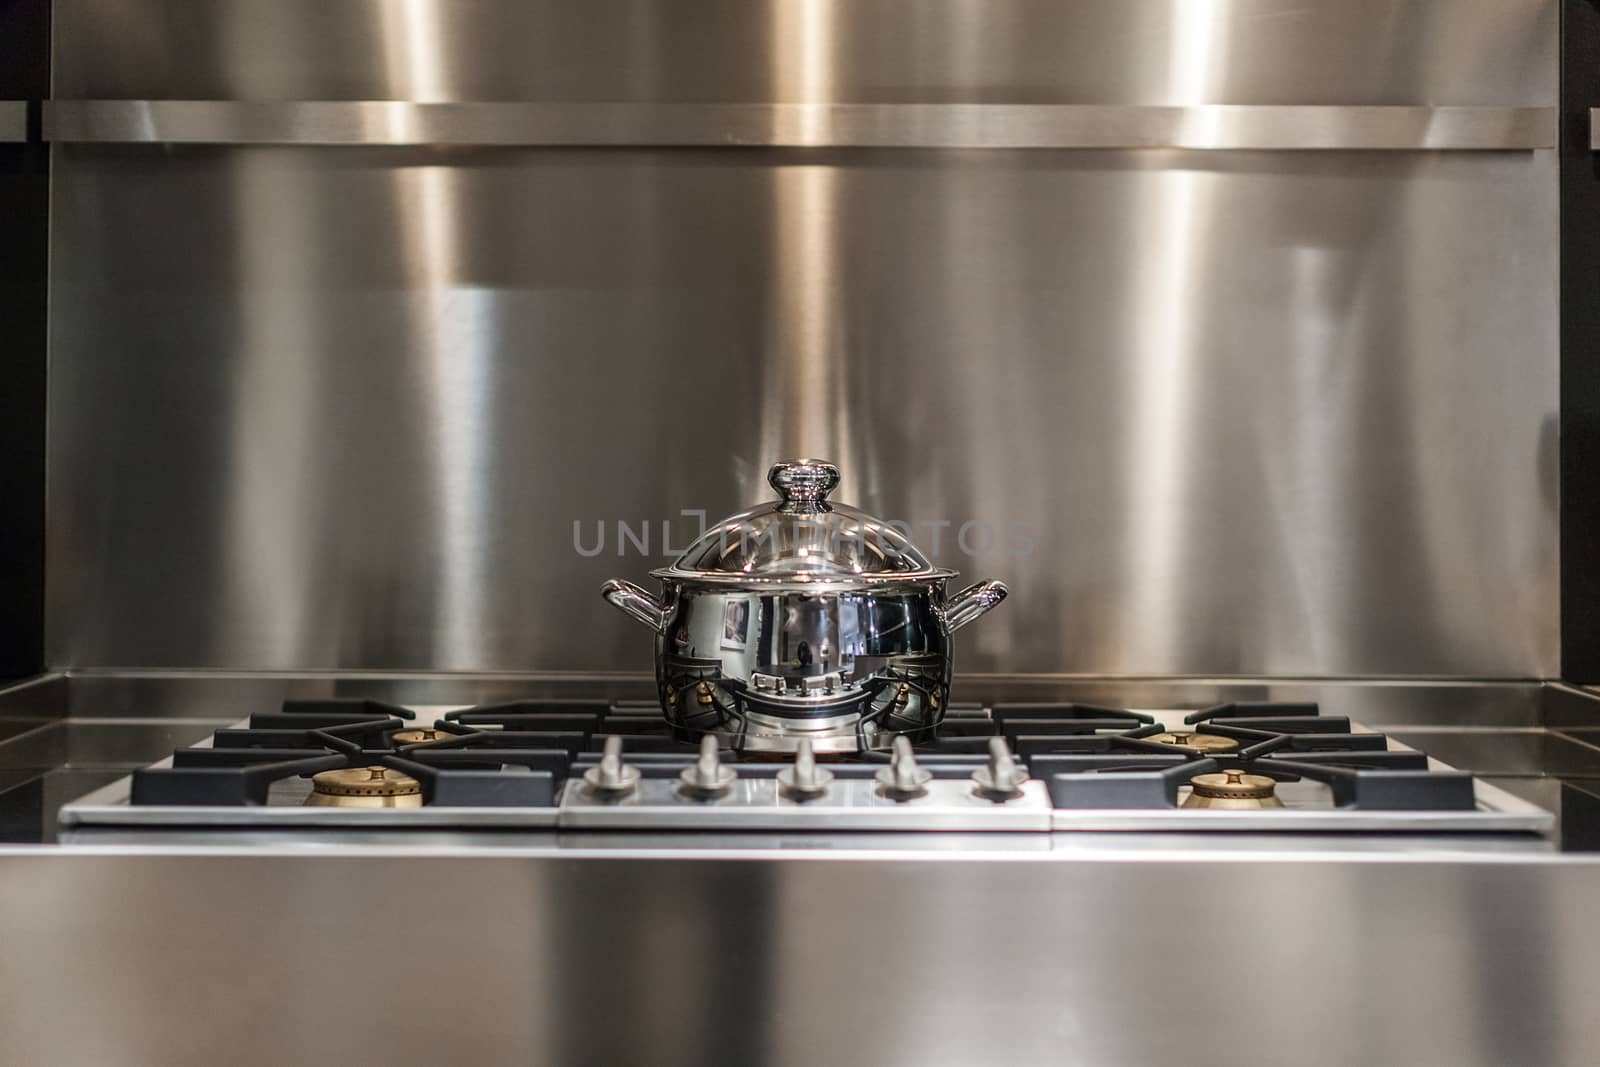 new stainless steel saucepan on modern kitchen range